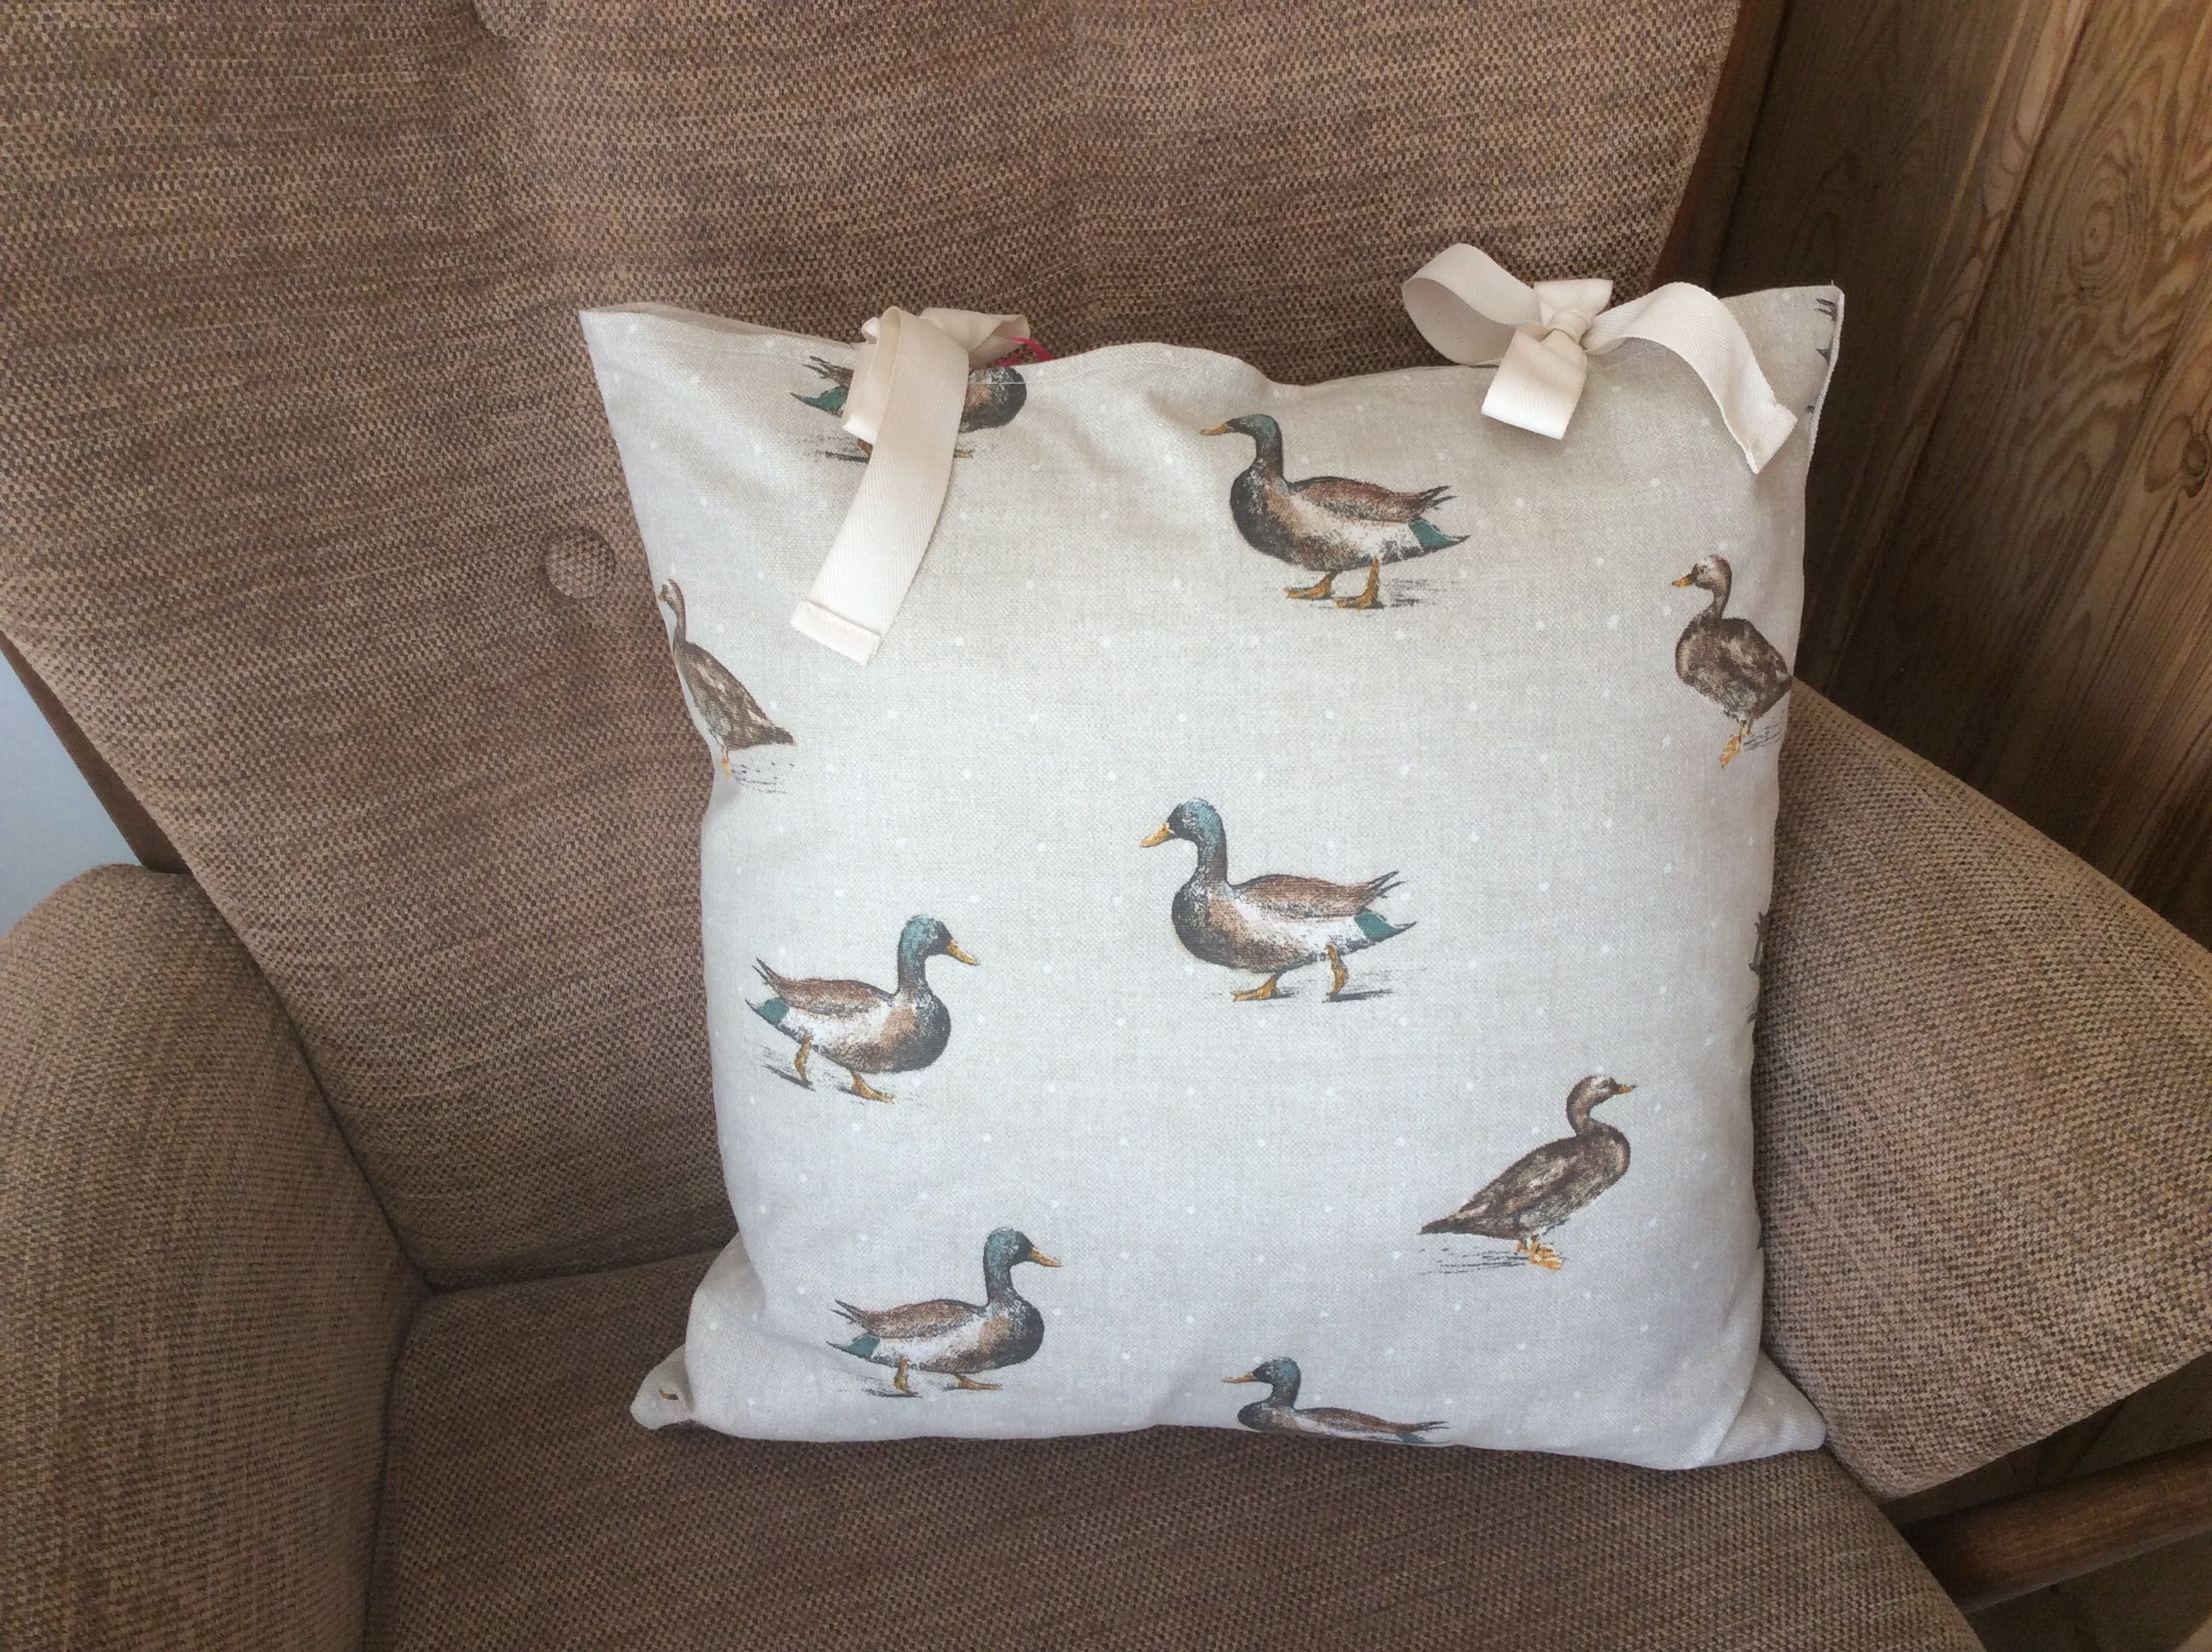 Cushion - ducks